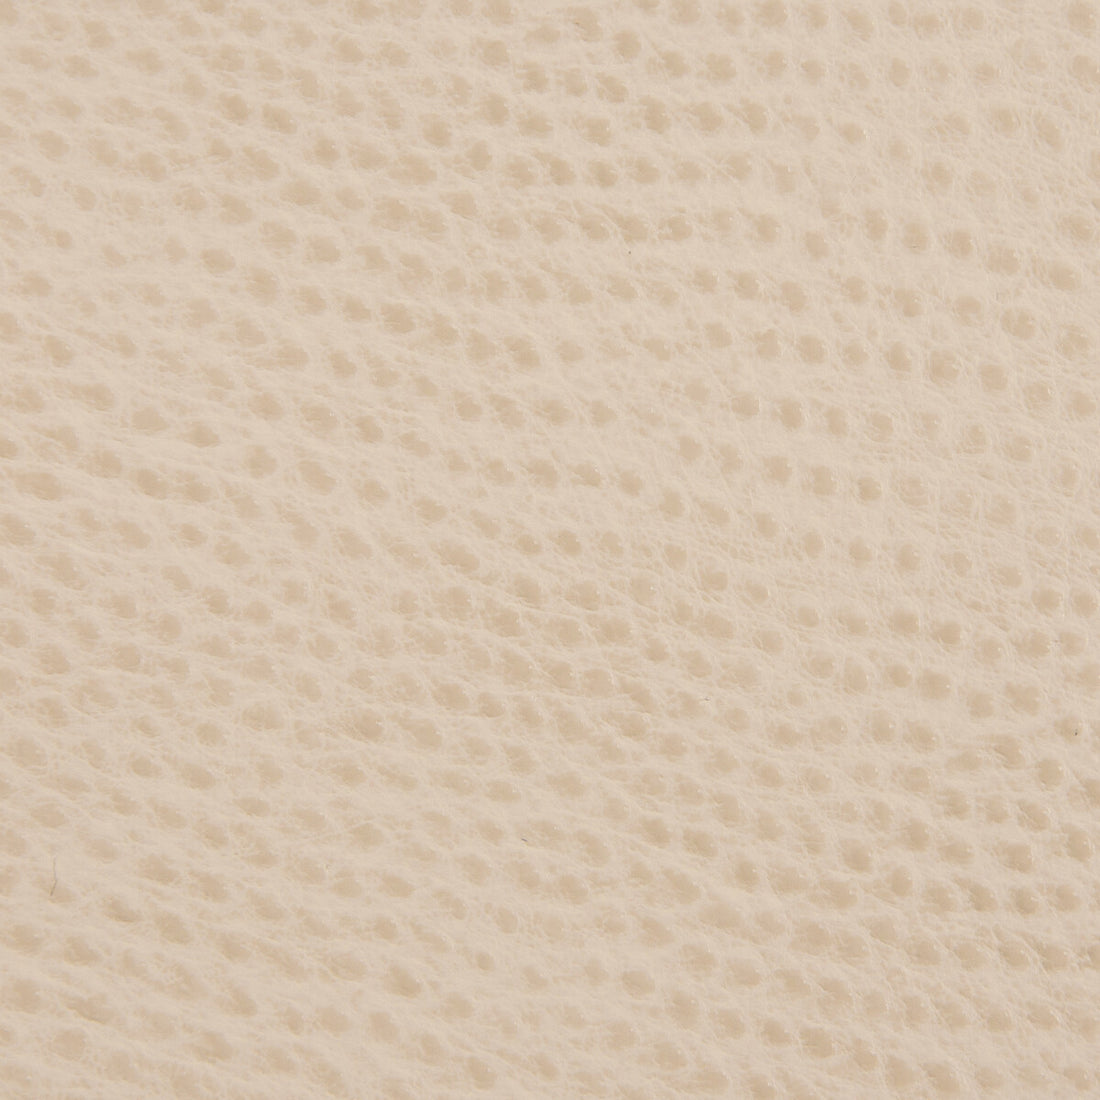 Kravet Smart fabric in ossy-16 color - pattern OSSY.16.0 - by Kravet Smart